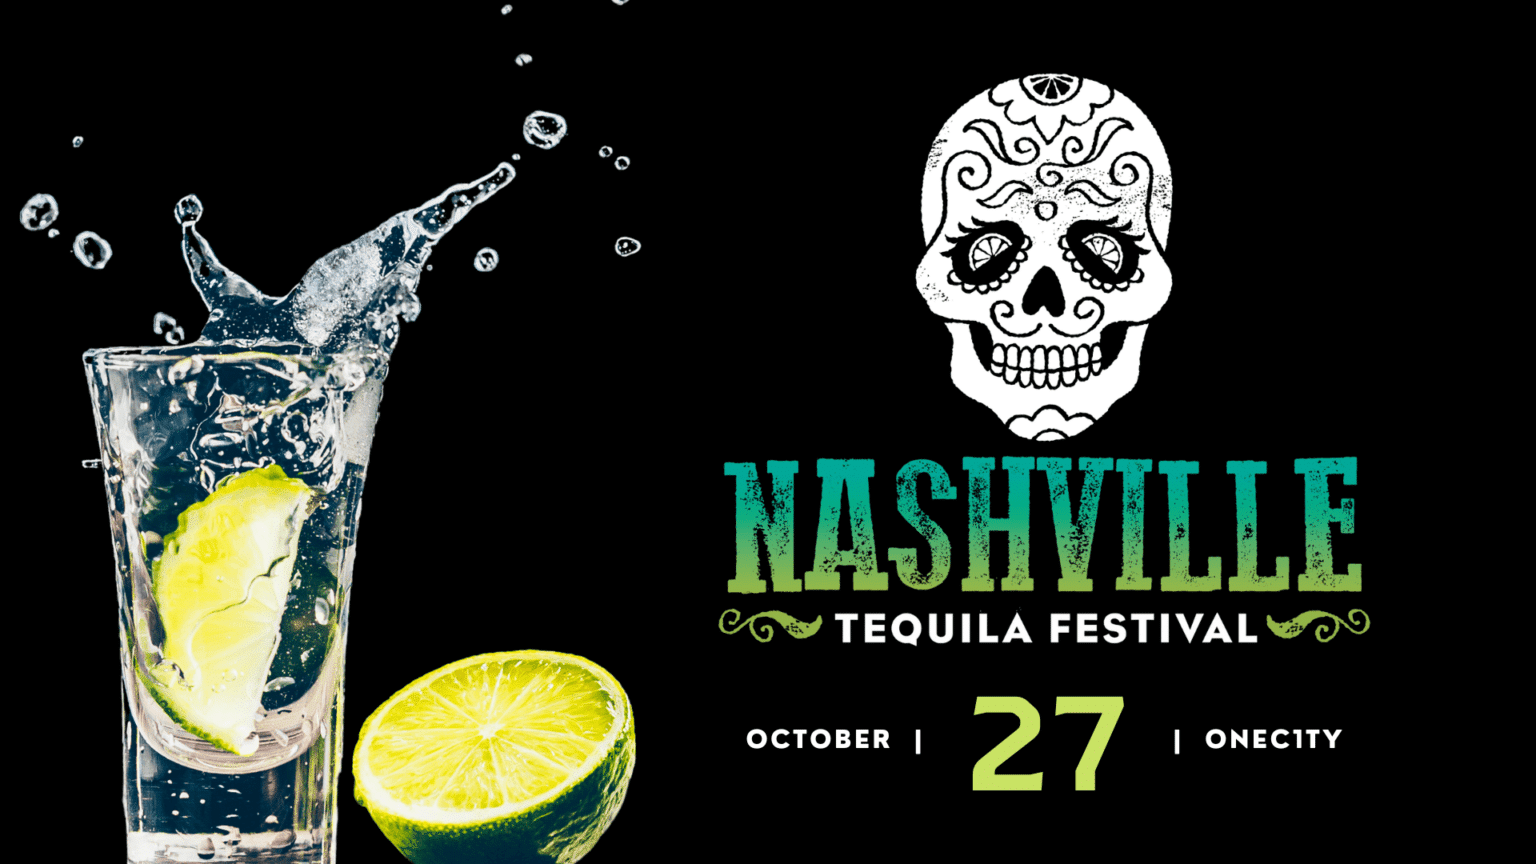 Nashville Tequila Festival